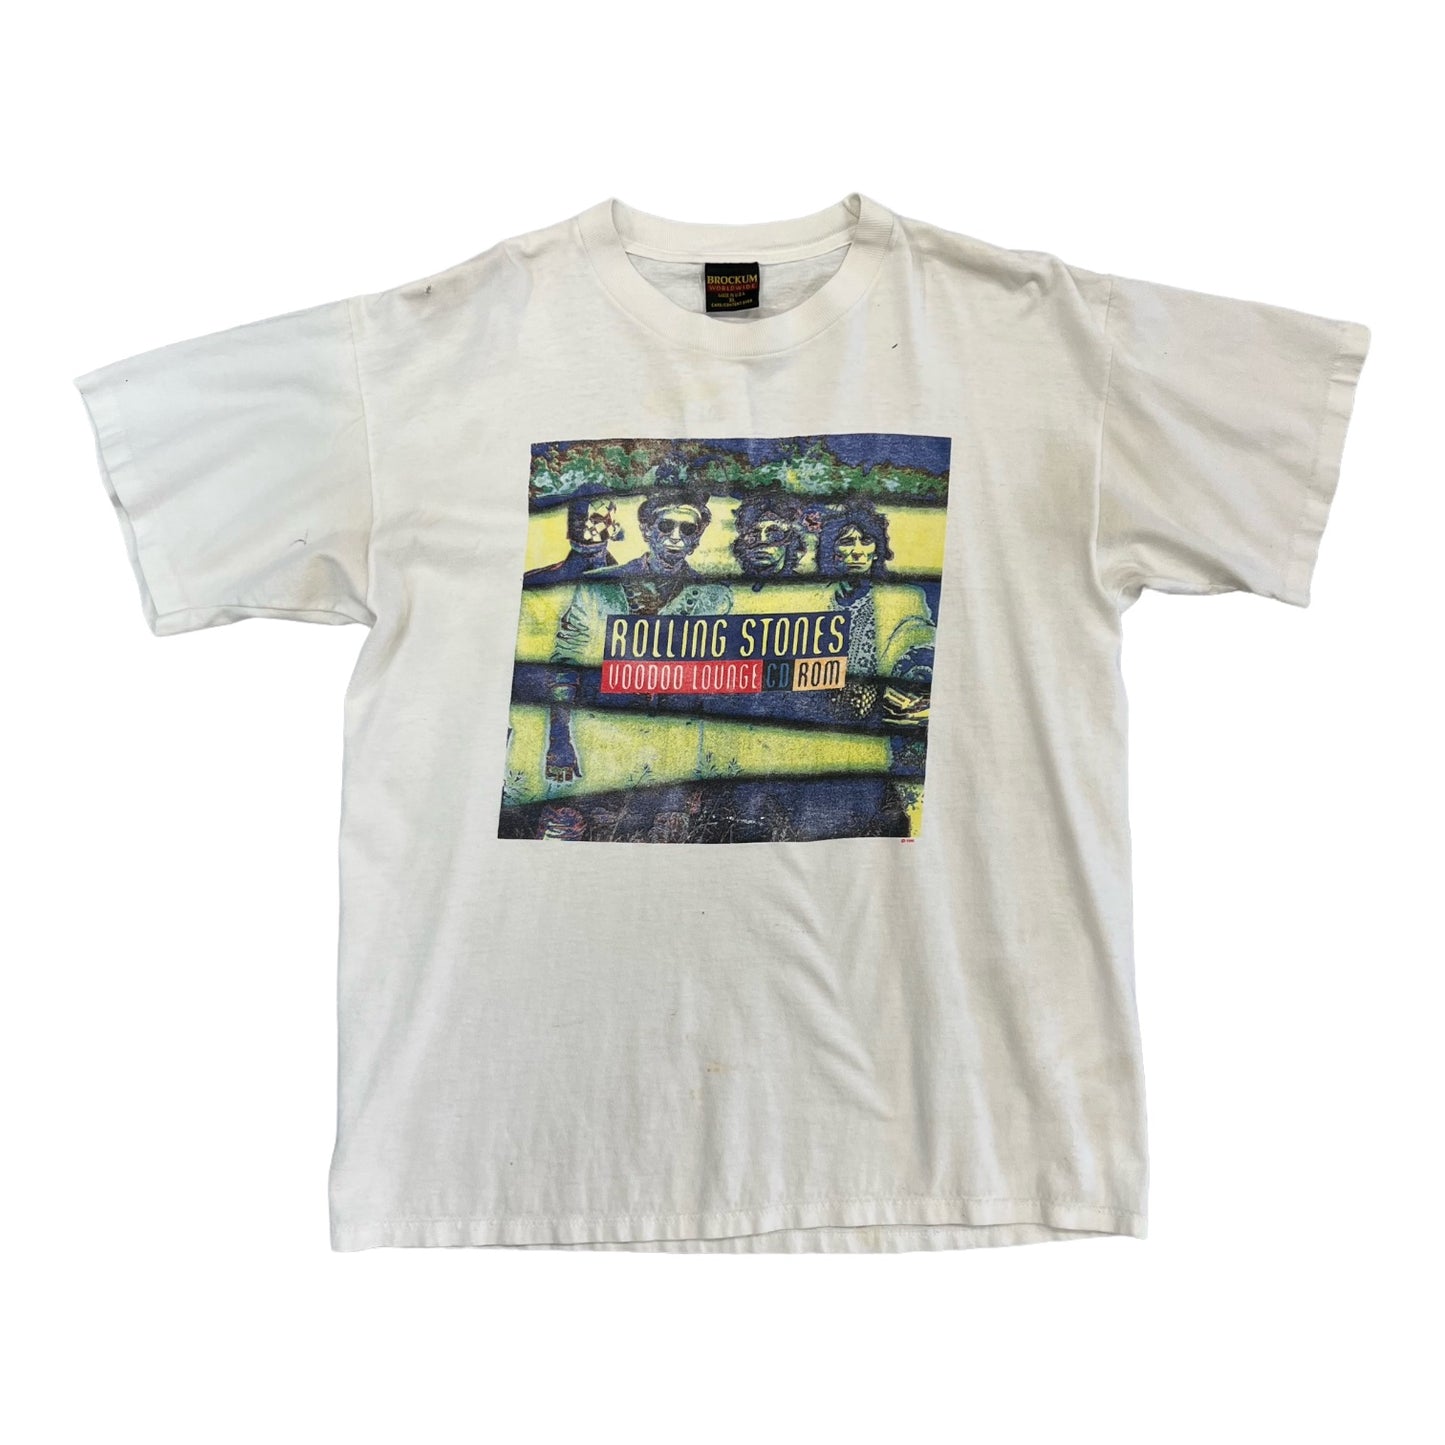 1990 Rolling Stones voodoo lounge cd room t-shirt